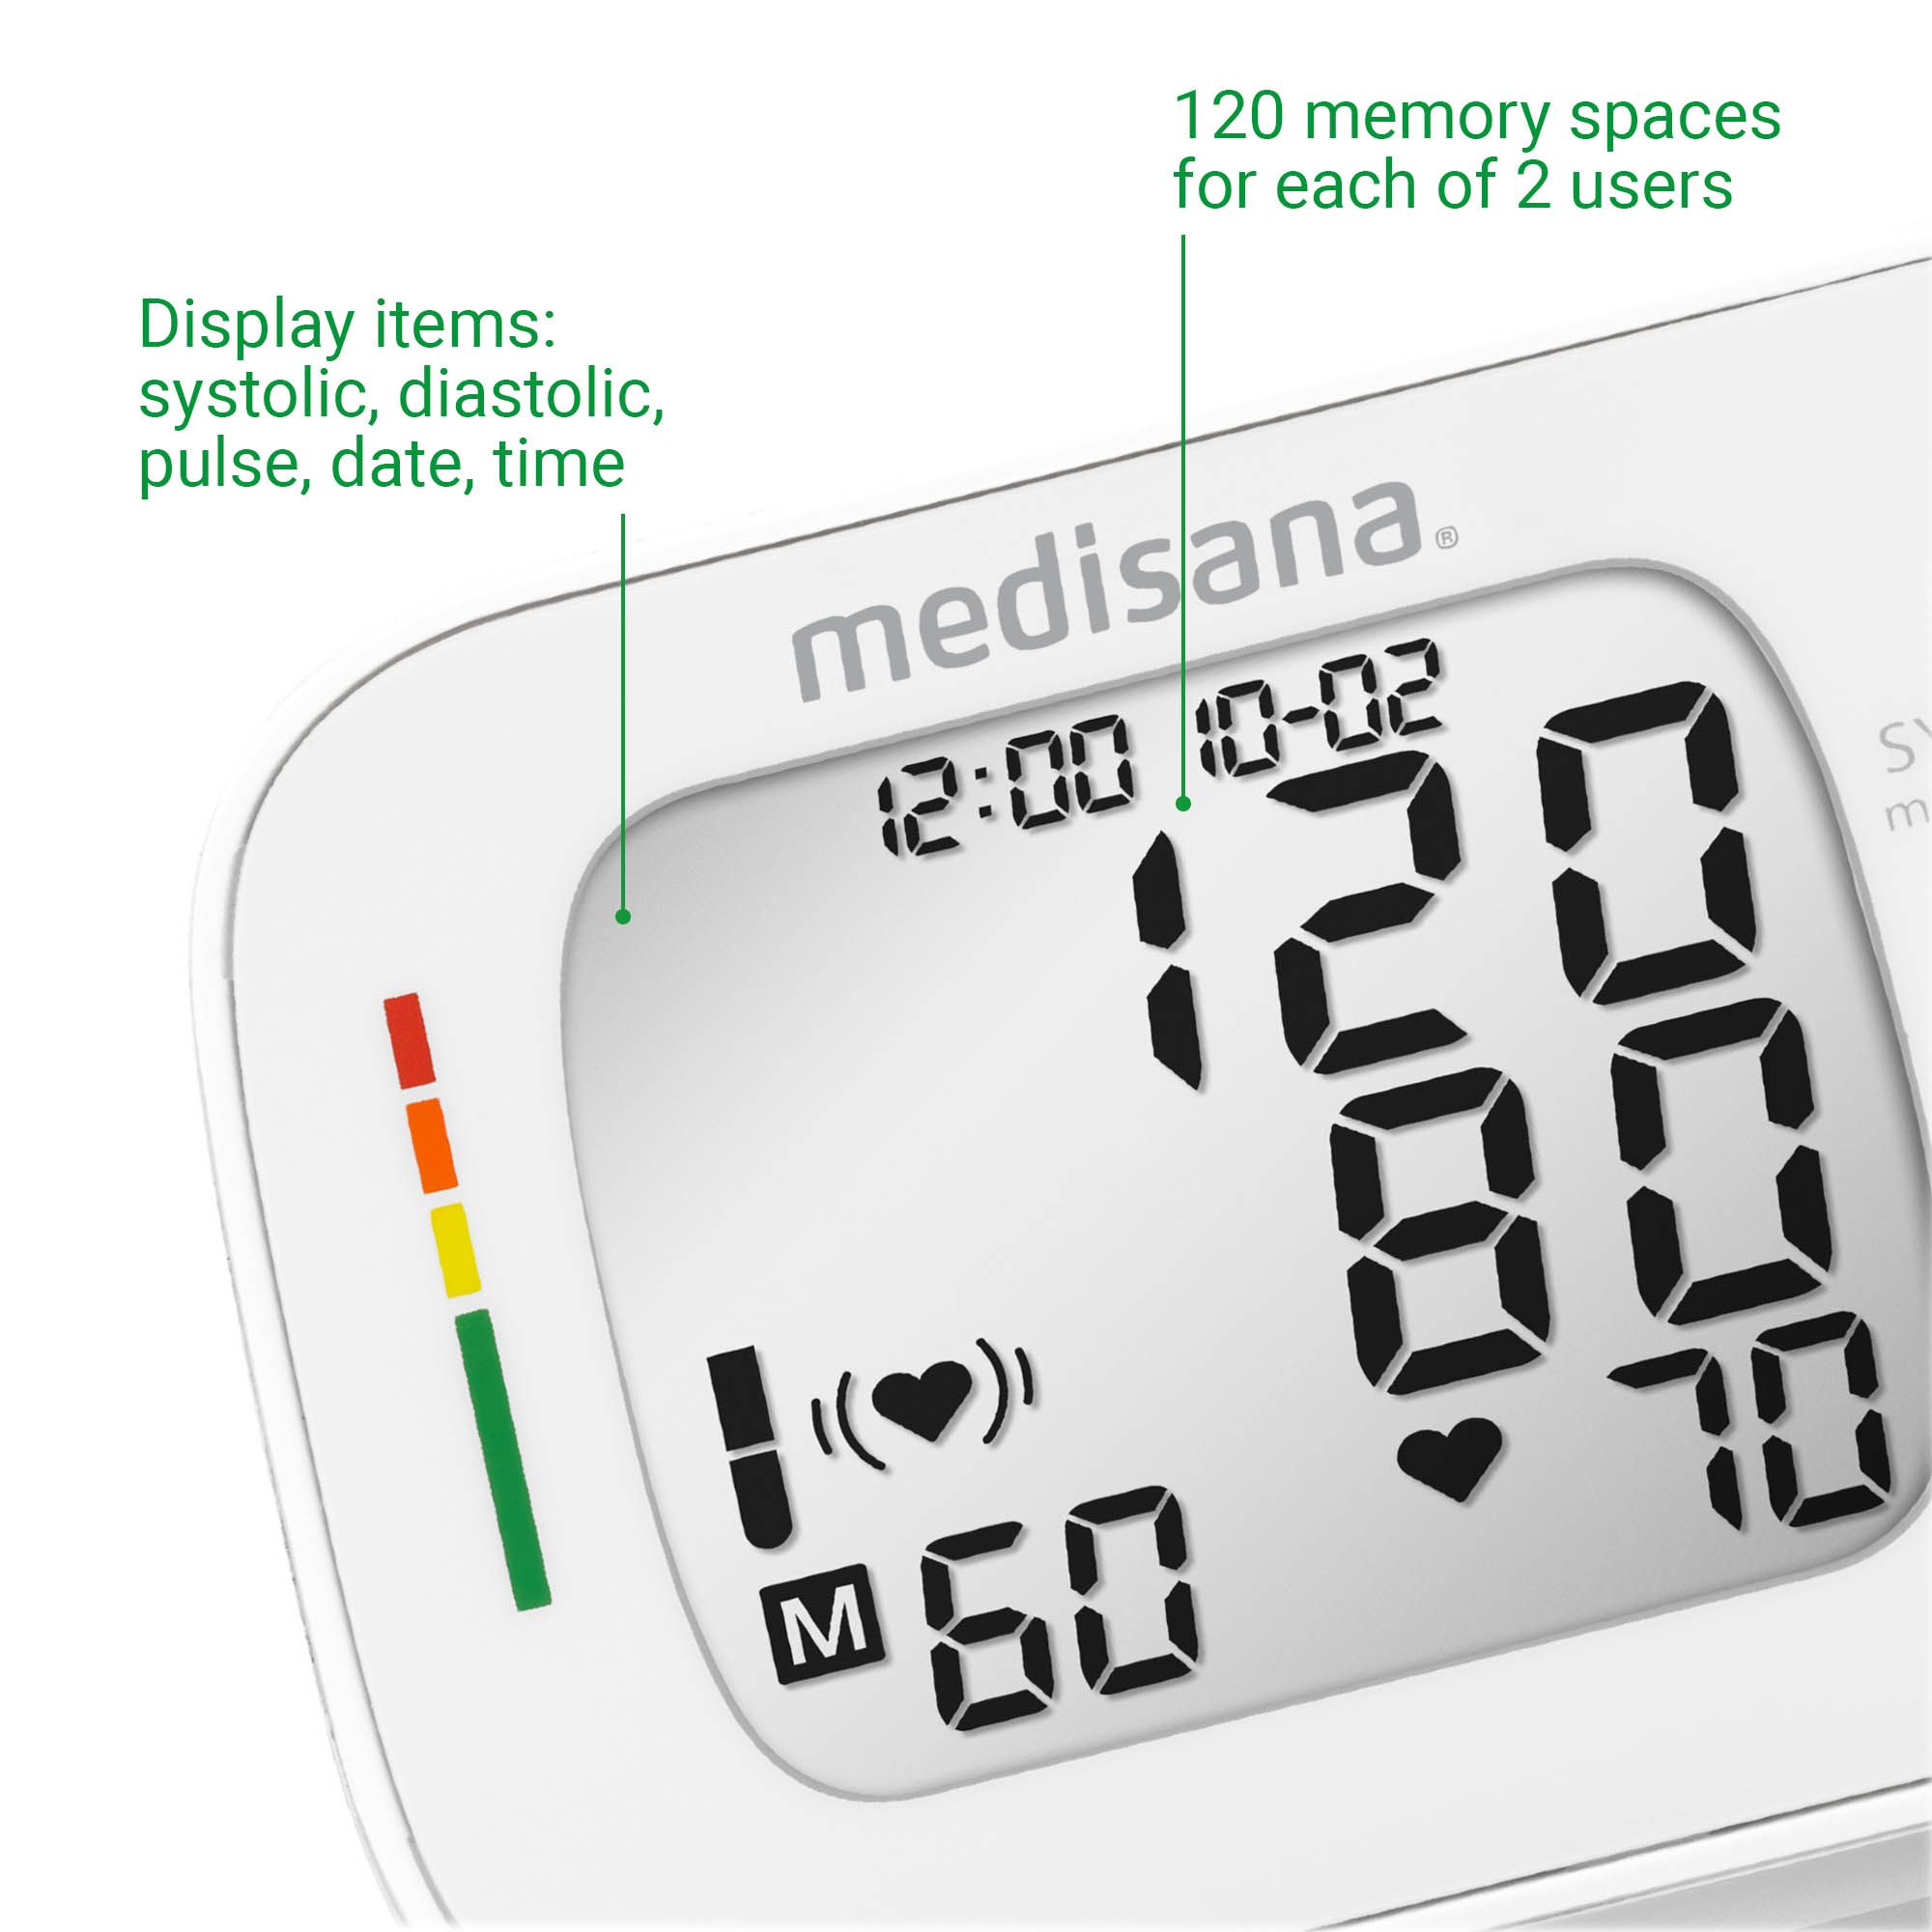 medisana BW 335 Handgelenk-Blutdruckmessgerät | Blutdruckmessung | Pulsmessung | Speicherfunktion